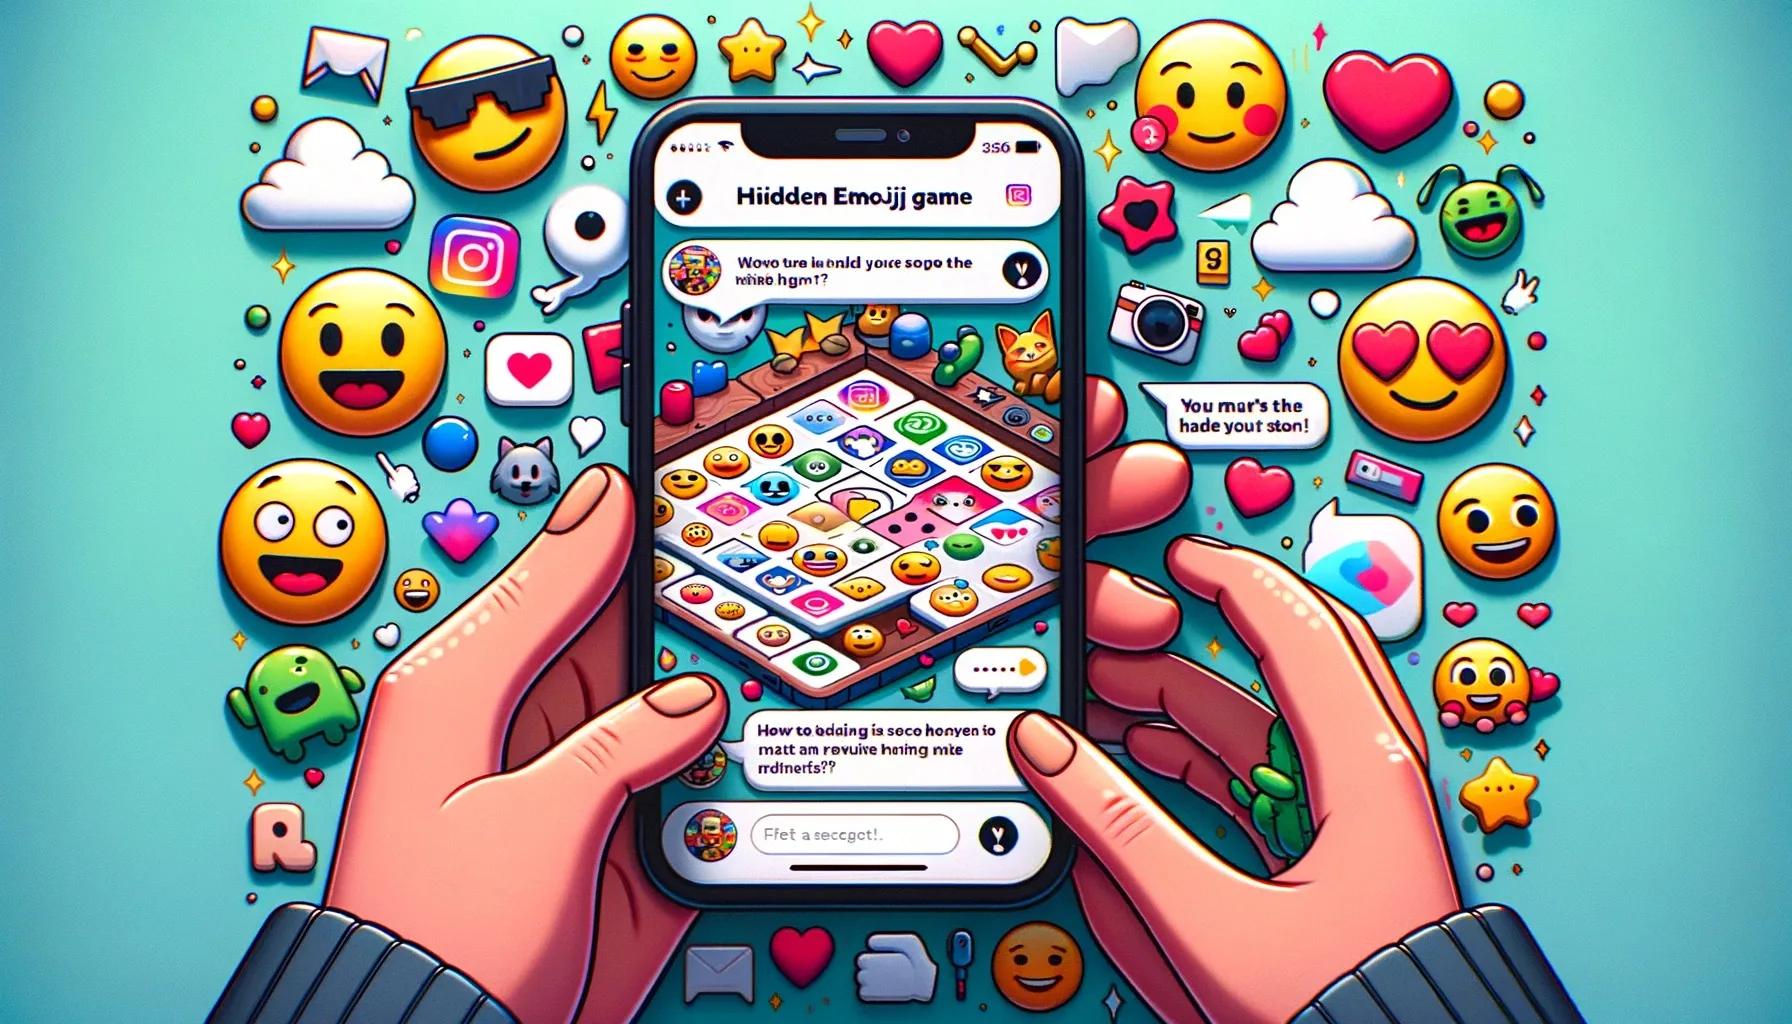 Instagram propose un jeu d’emoji caché, voici comment y jouer